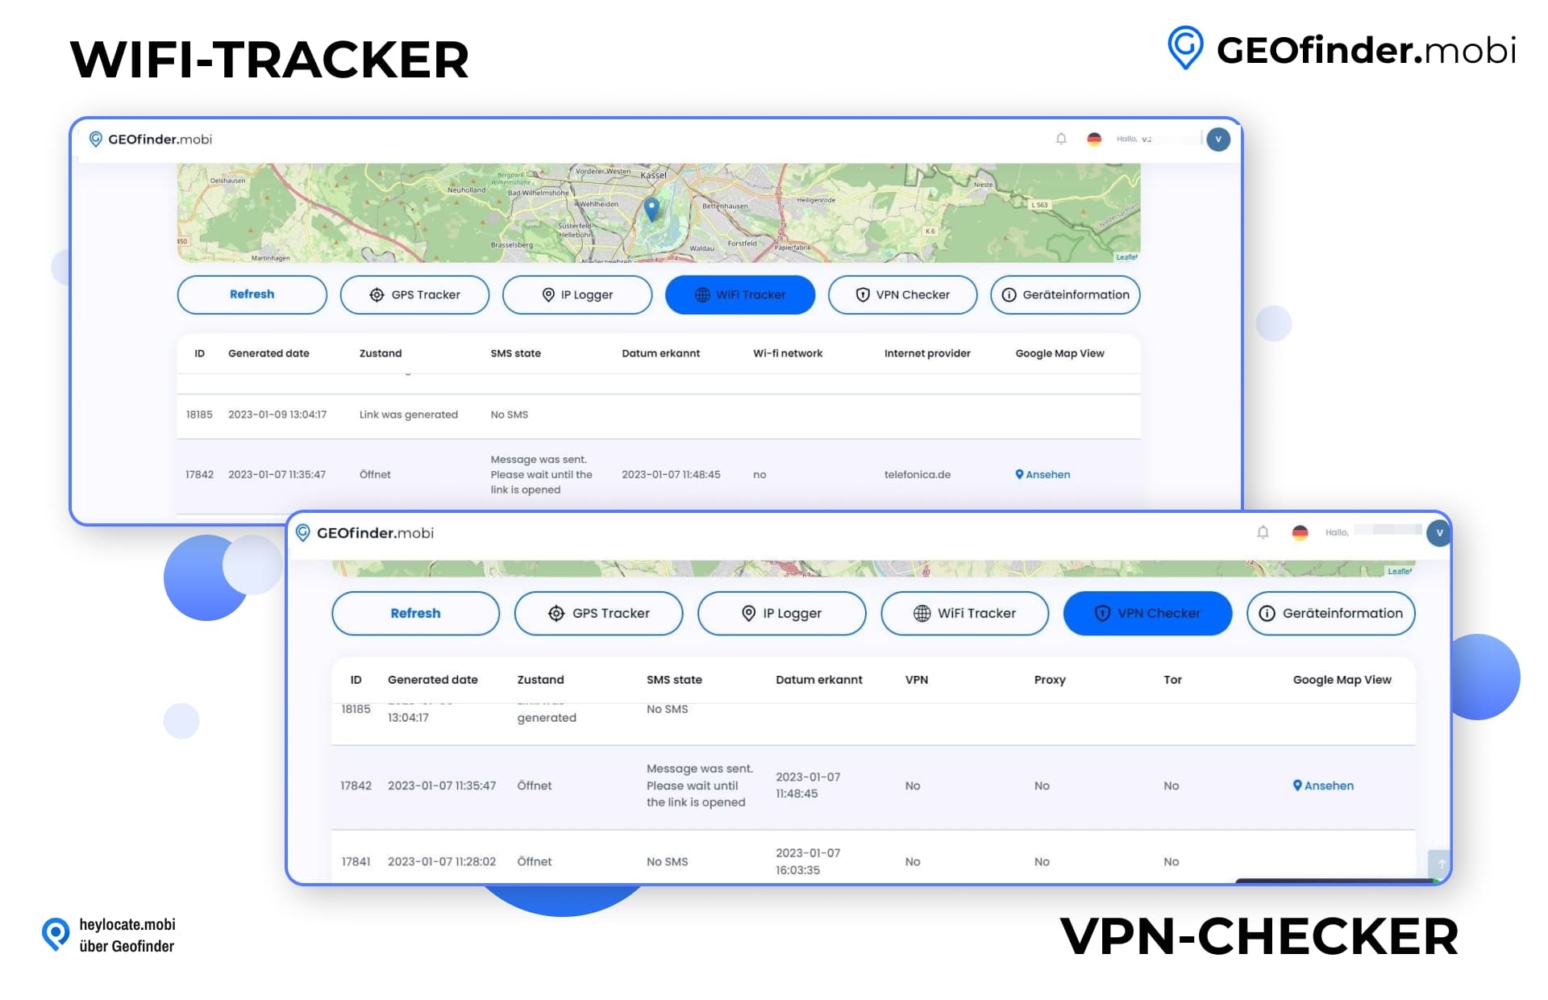 Die Benutzeroberfläche von GEOfinder.mobi zeigt die Registerkarten "WiFi Tracker" und "VPN Checker" mit detaillierten Auflistungen von ID-Nummern, Daten, SMS-Status, Erkennungsdatum und Netzwerkinformationen für Verfolgungszwecke.